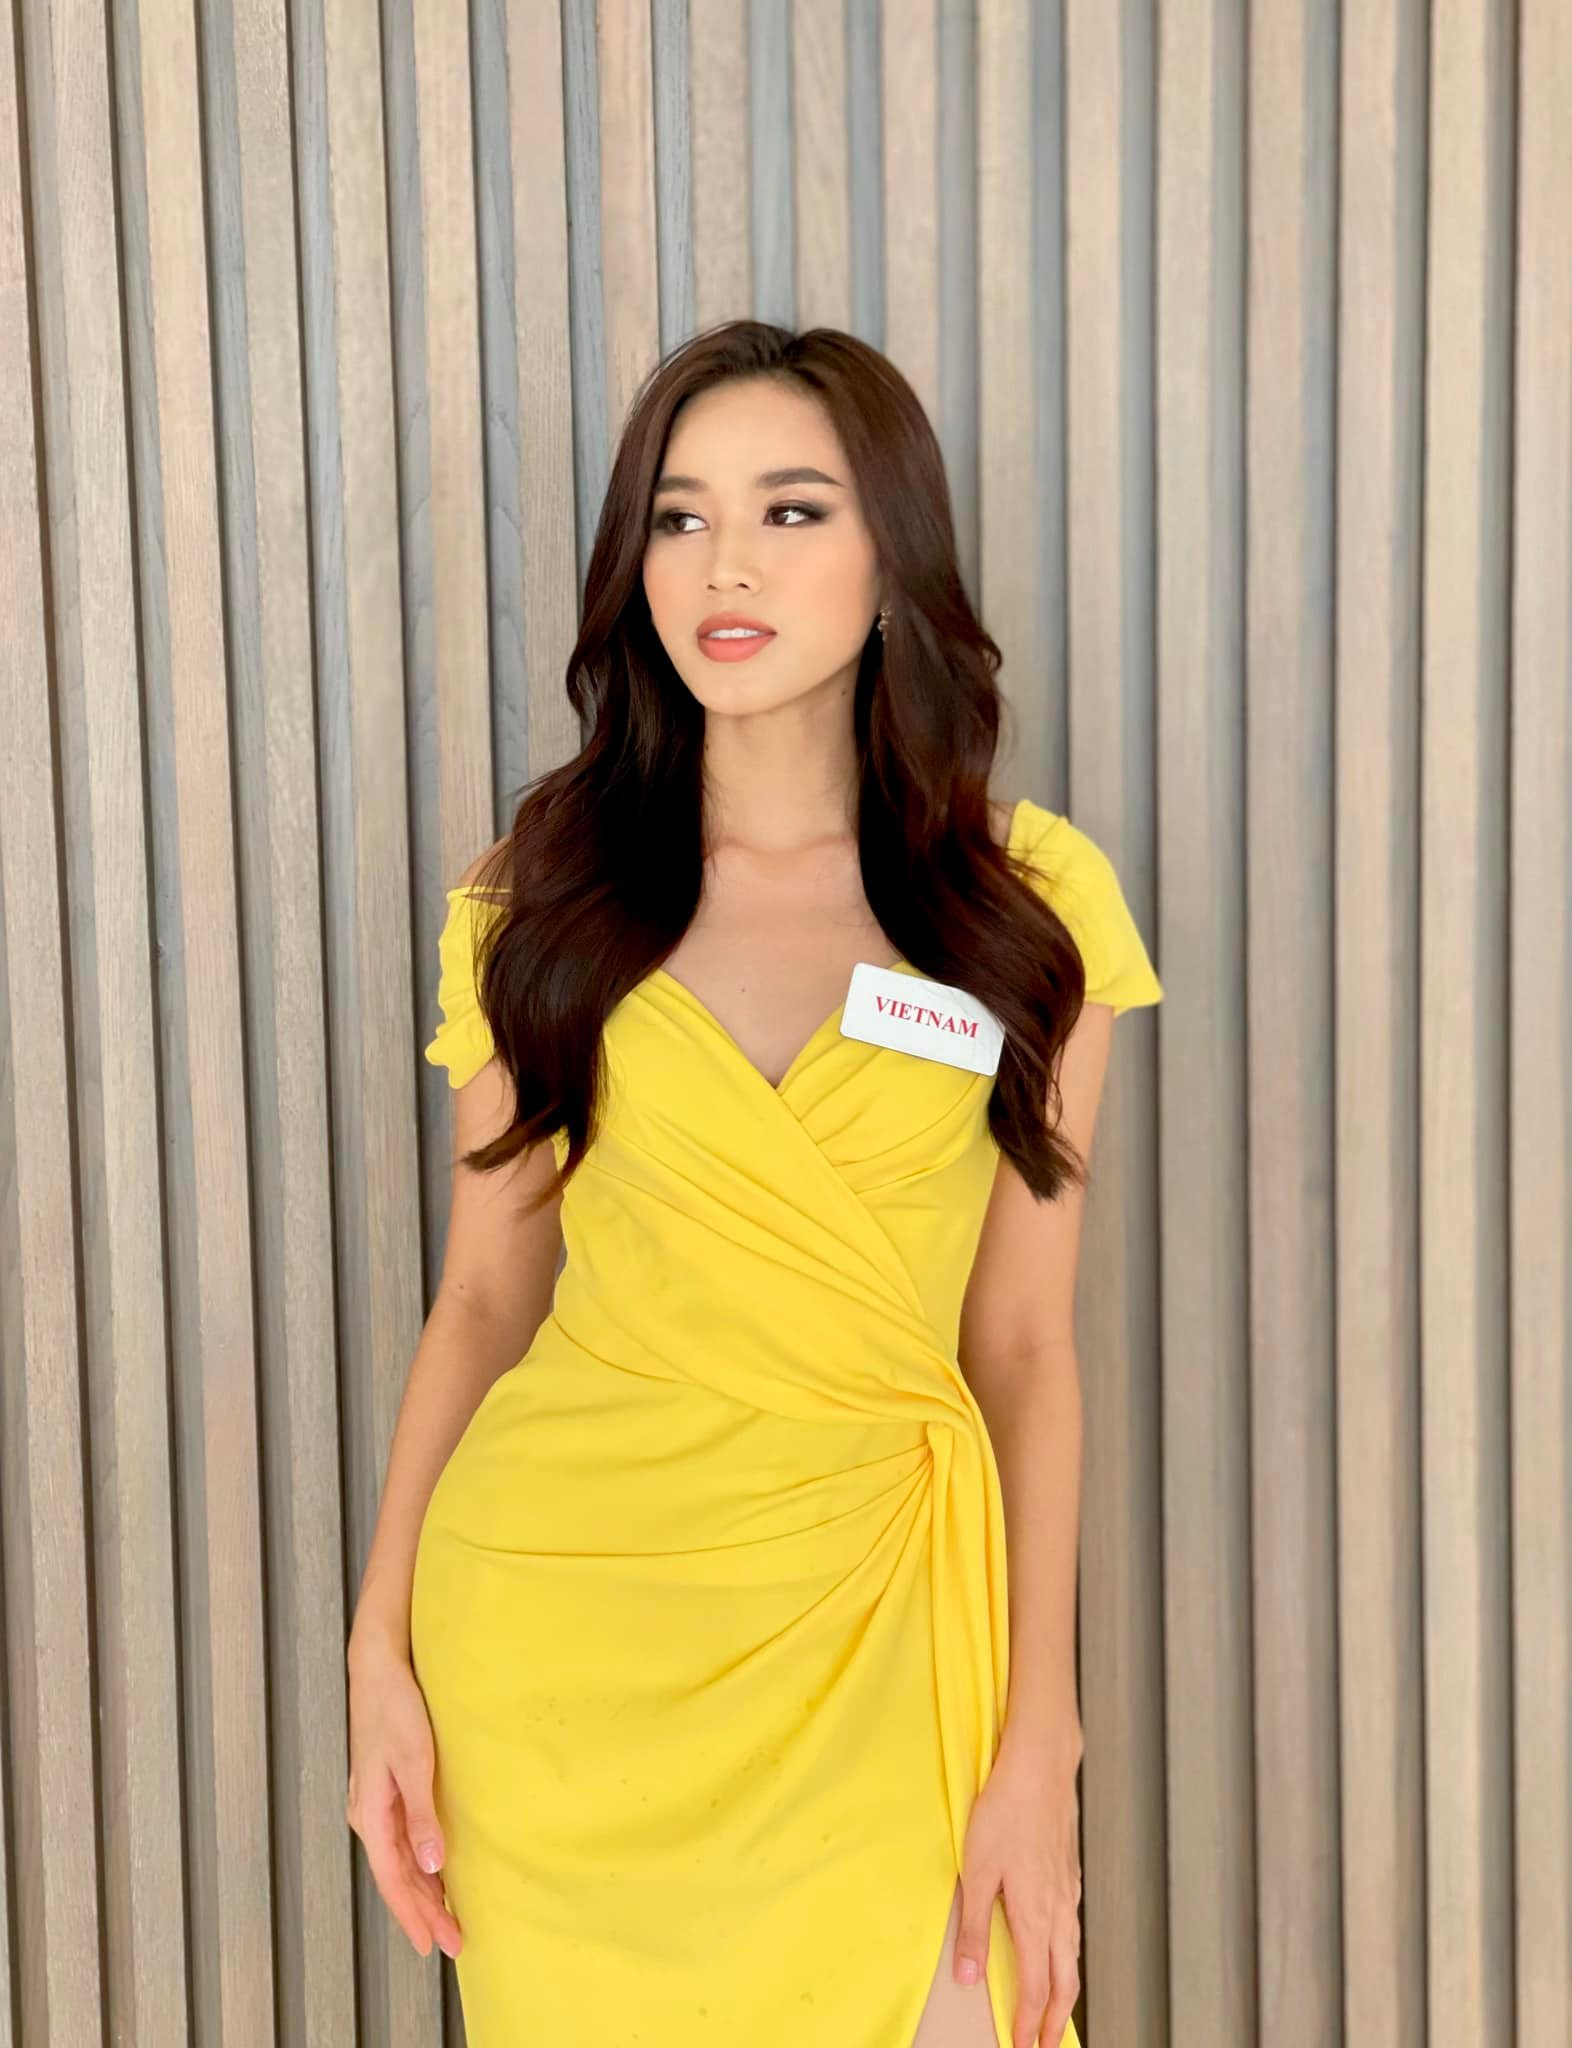 Hoa hậu Đỗ Thị Hà xuất hiện nền nã, ngọt ngào trong chiếc váy vàng kín đáo nhưng không kém phần nổi bật